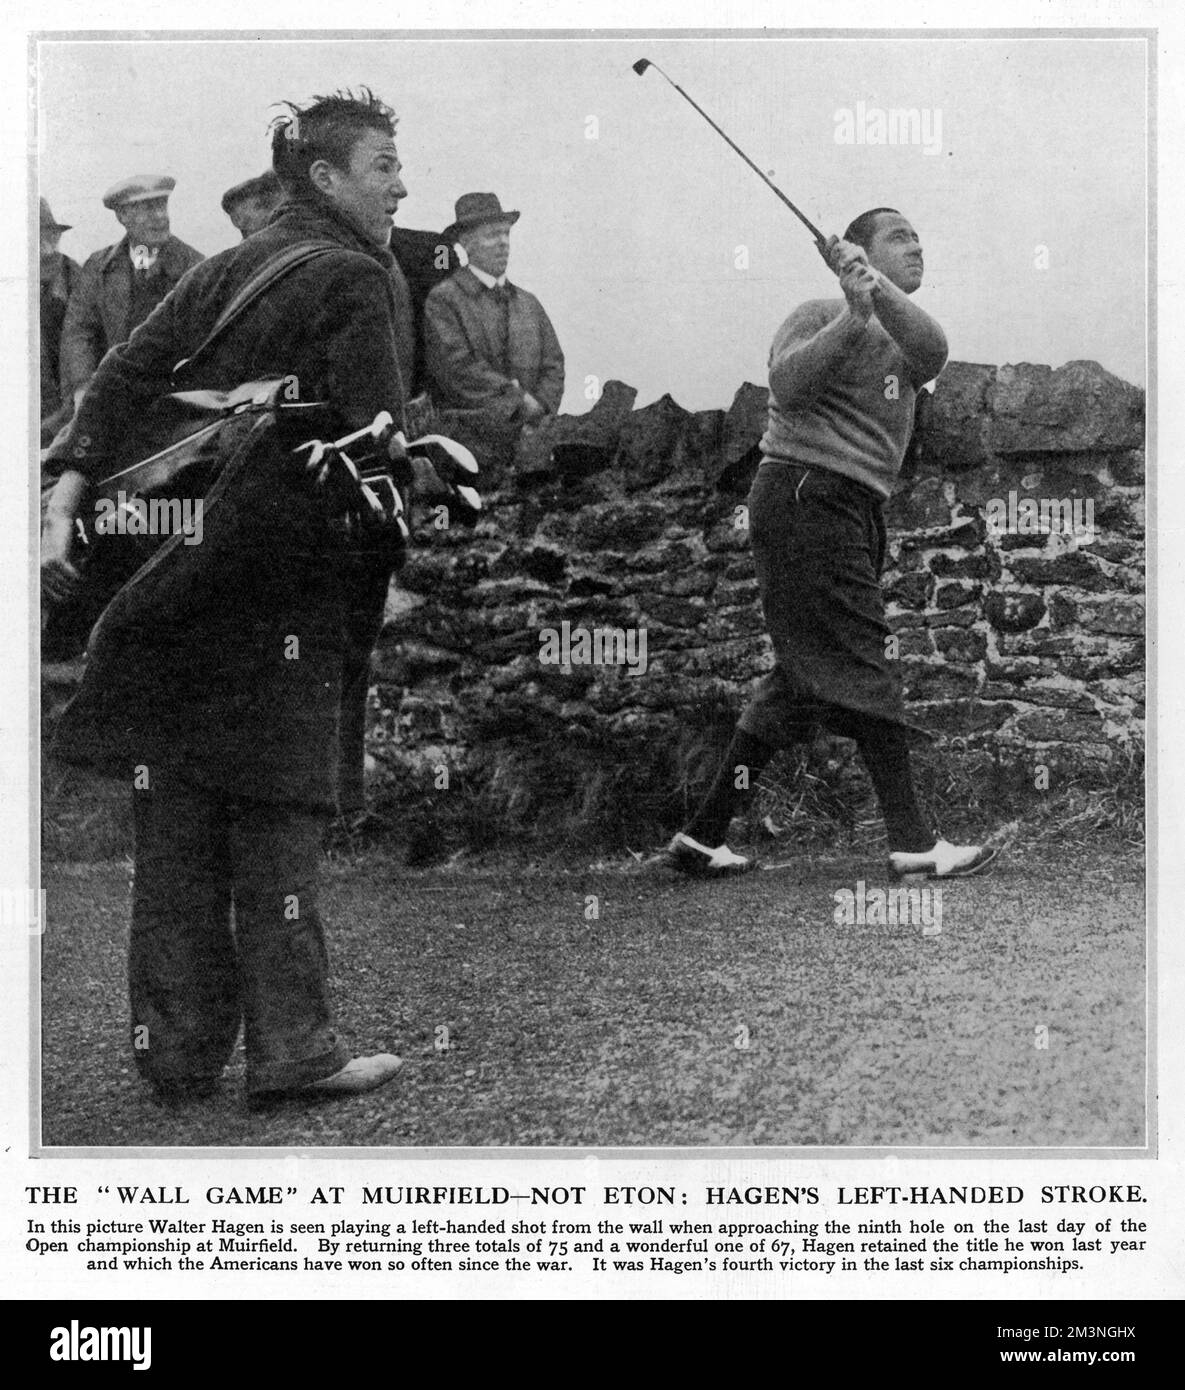 Der amerikanische Golfer Walter Hagen spielt einen Linkshänder aus einer schwierigen Position auf dem neunten Loch in Muirfield, Schottland. Sein Ball ist zu nah an einer Steinmauer, um ihn auf seine übliche rechtshändige Art zu treffen. Hagen spielte am letzten Tag der Open Championship, auf dem Weg zum vierten und letzten seiner Open-Siege. Datum: Mai 1929 Stockfoto